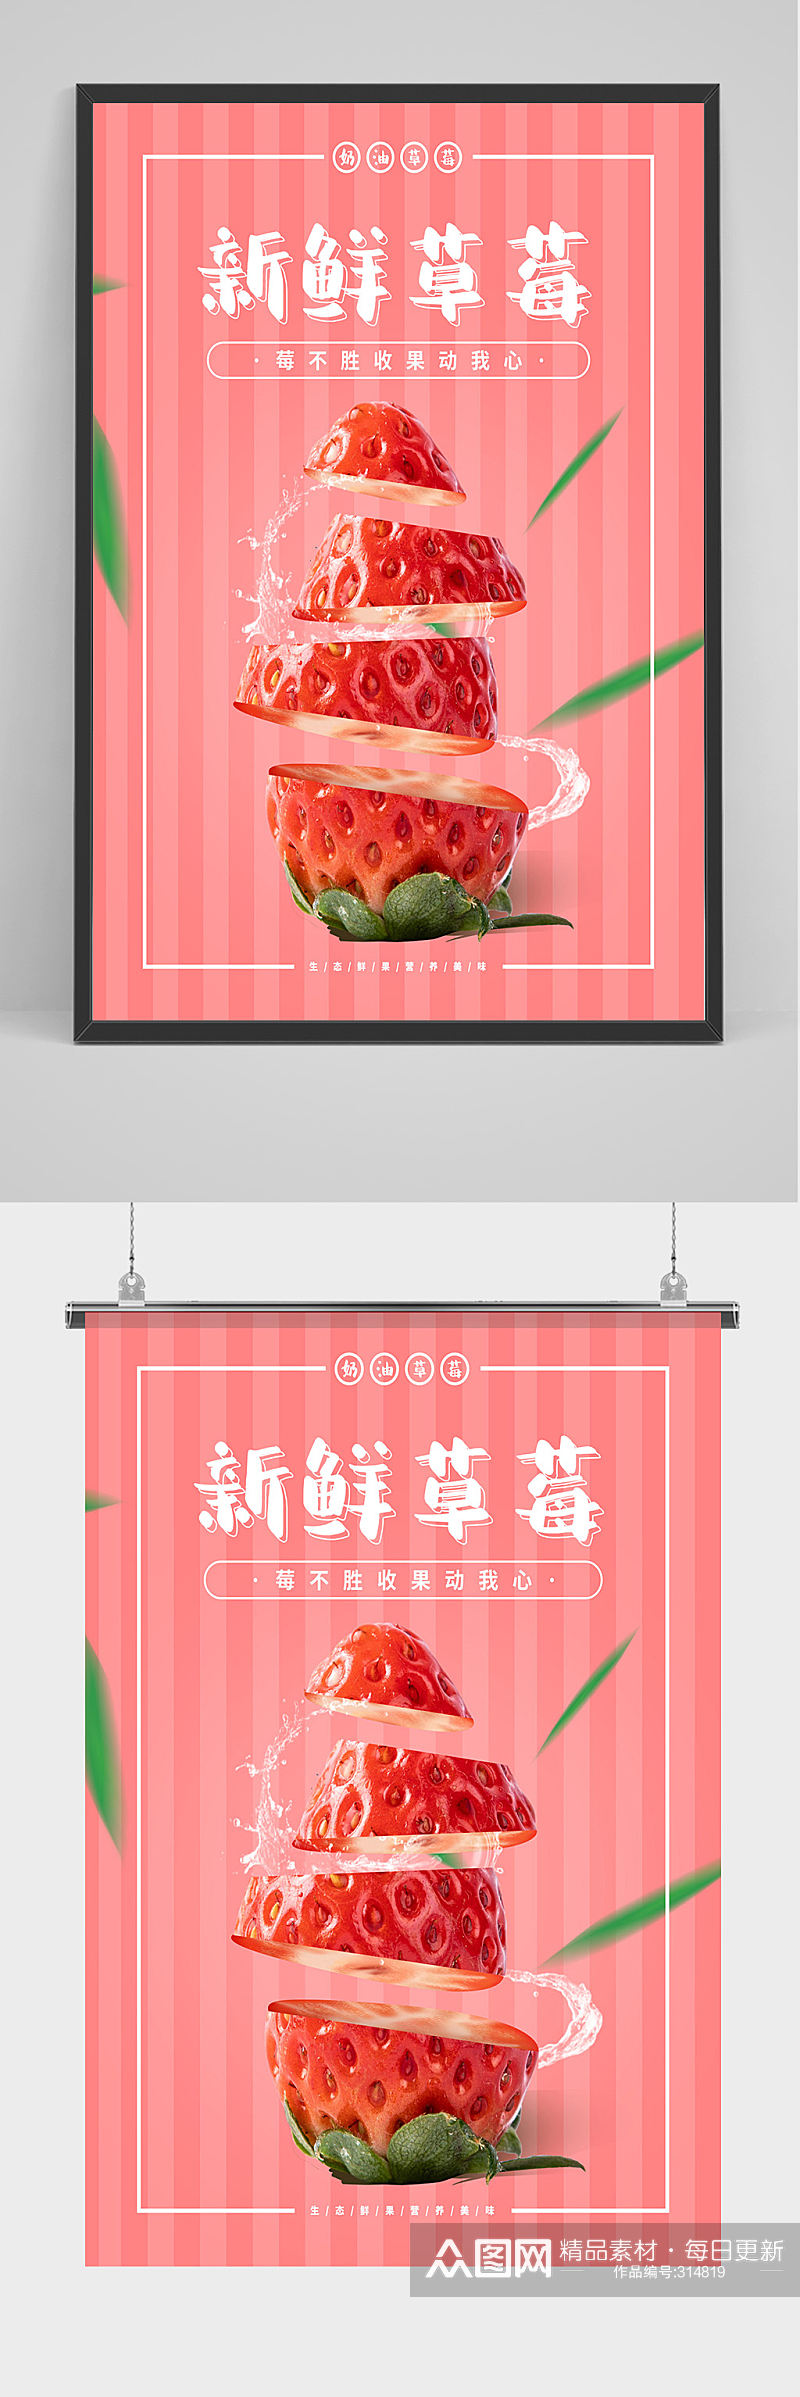 小清新新鲜草莓海报设计素材